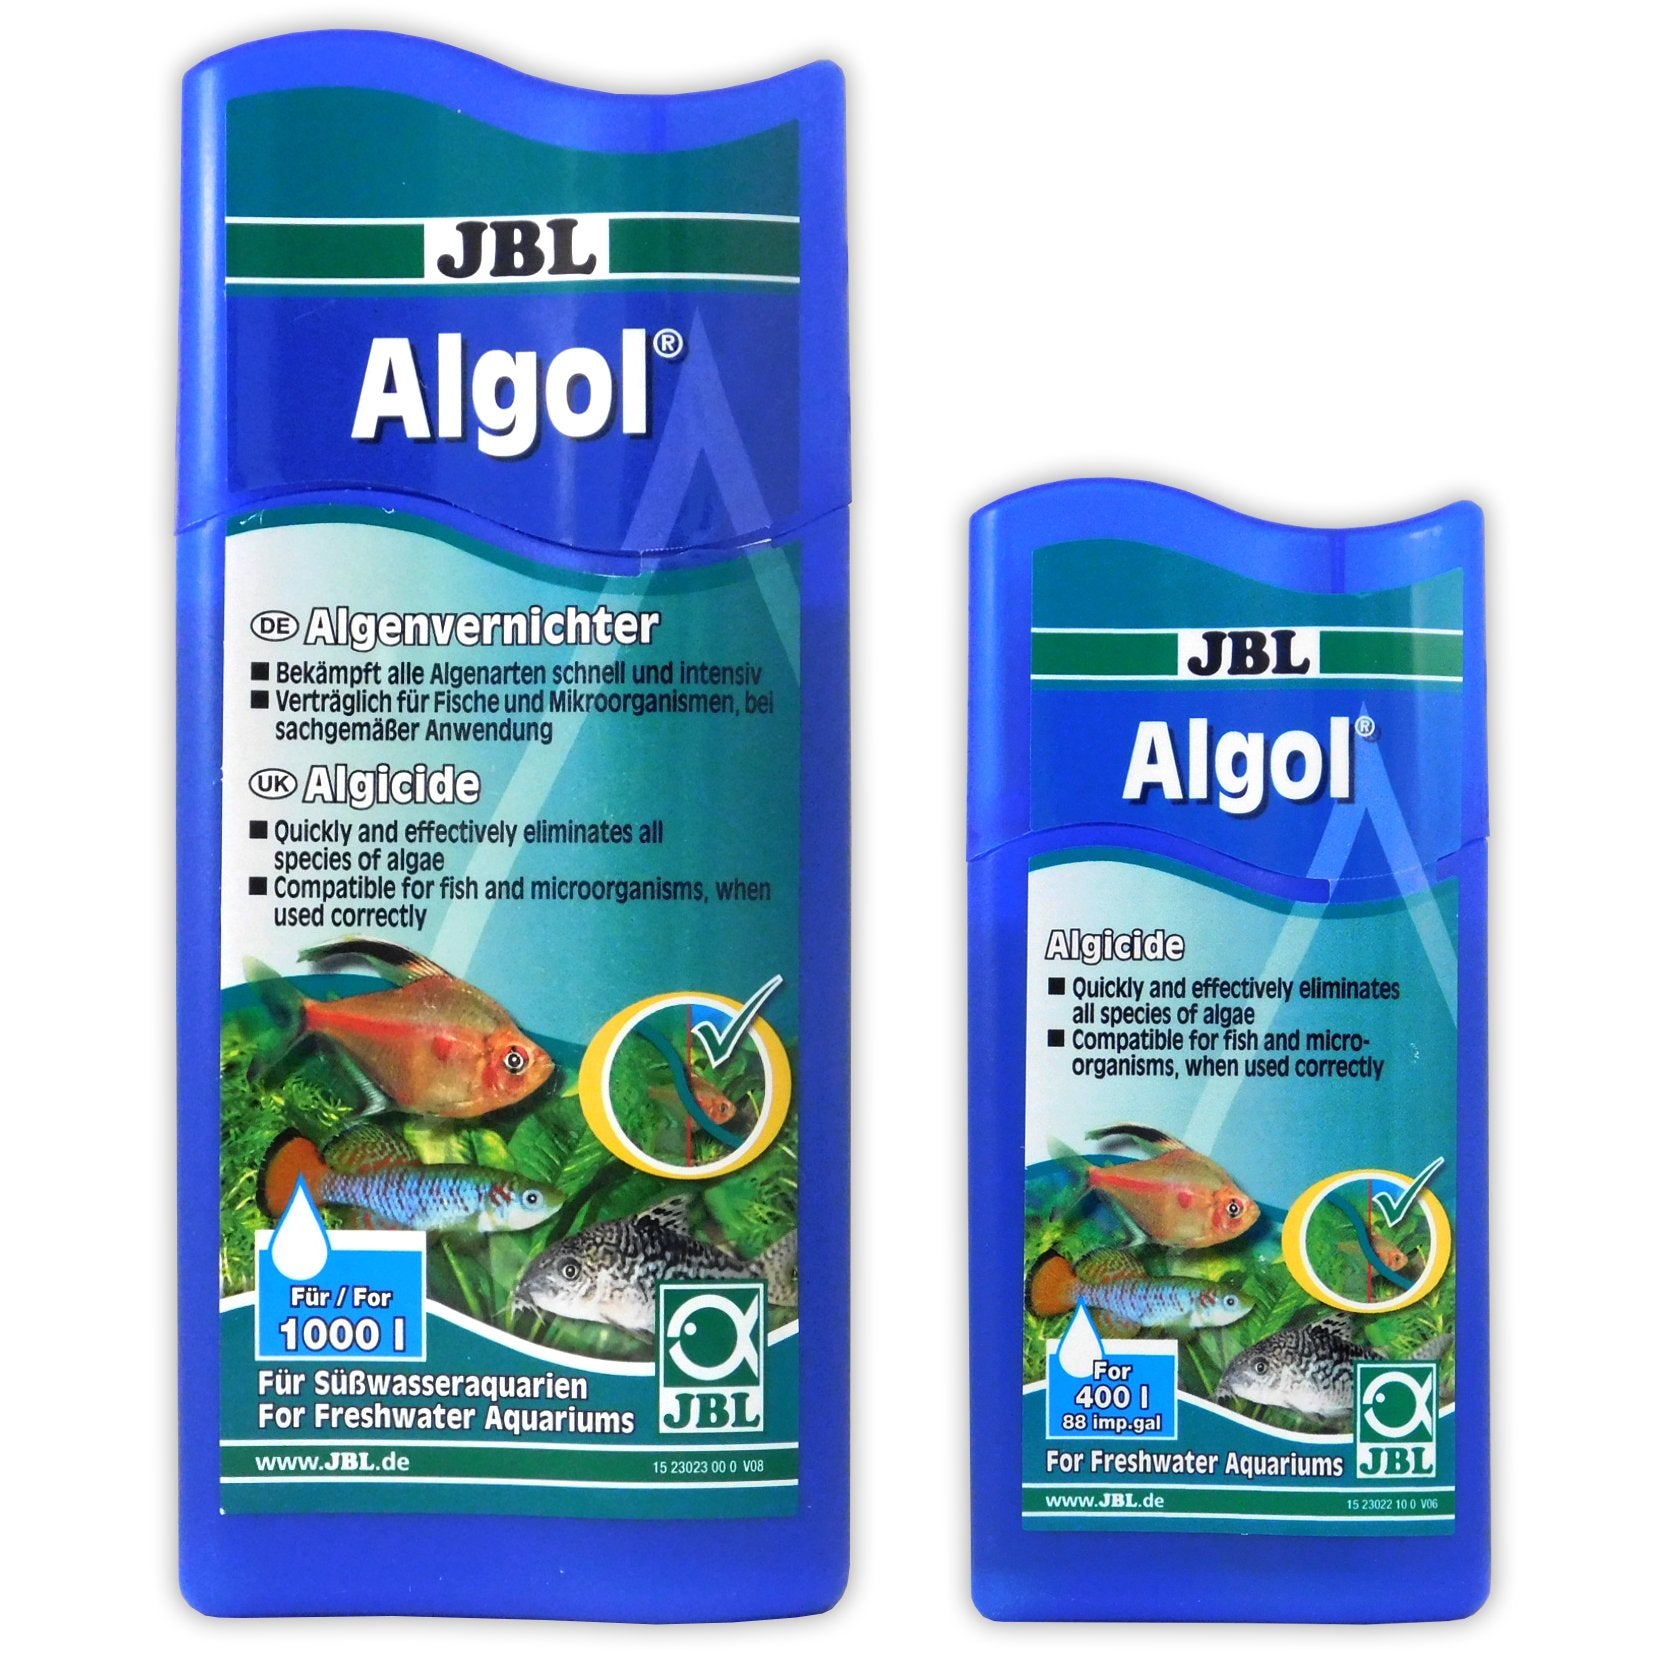 JBL - Algol - Protiv neželjenih algi - 250ml